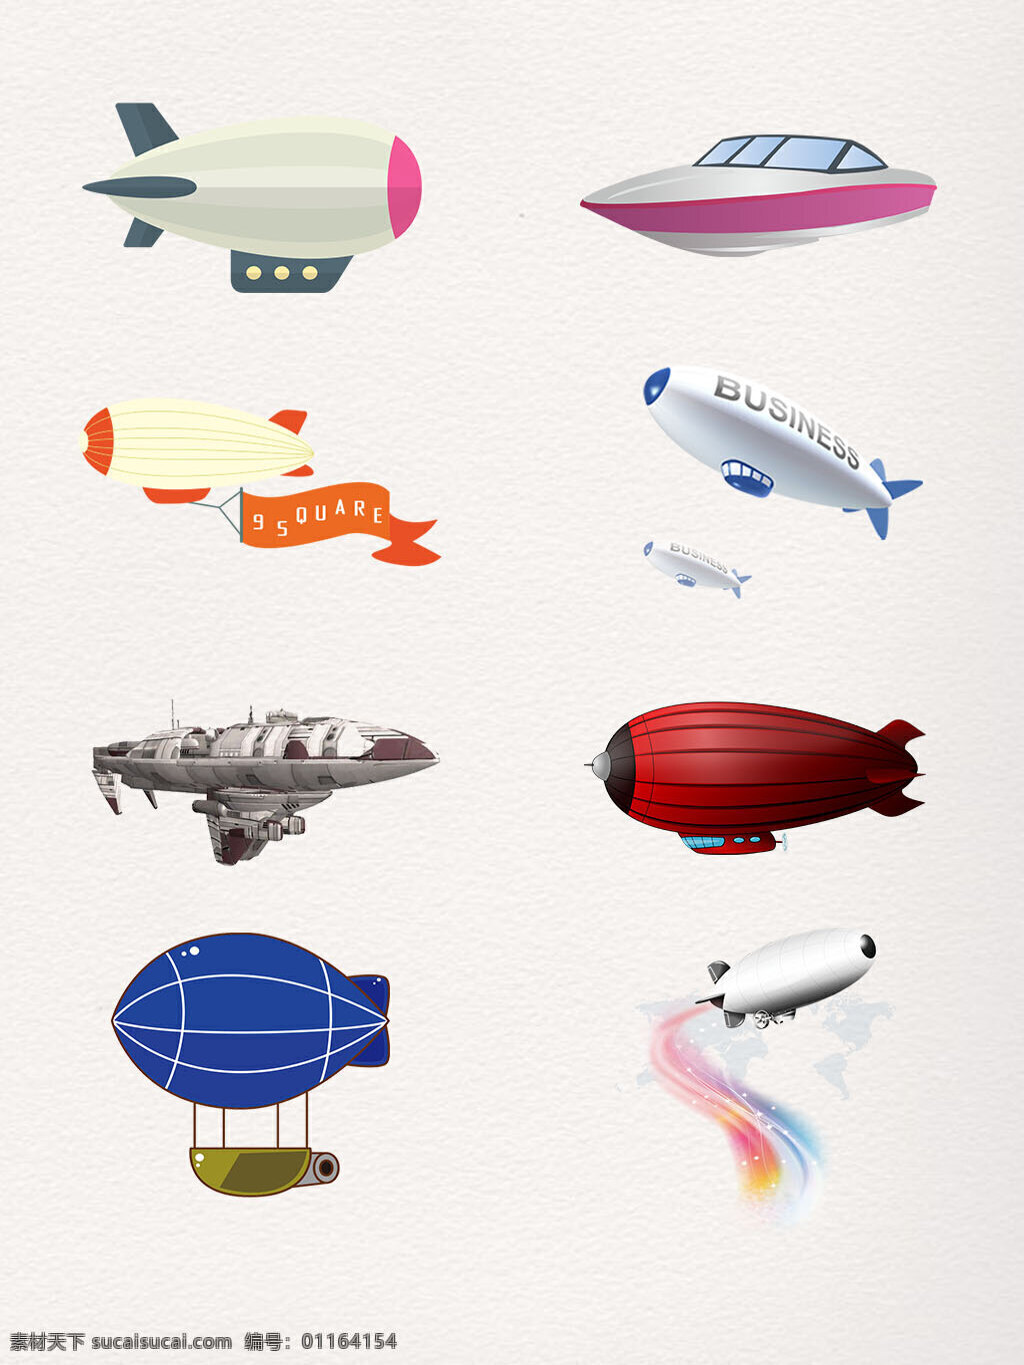 彩色 飞艇 图案 装饰 元素 插画 创意 动画 卡通 可爱 手绘